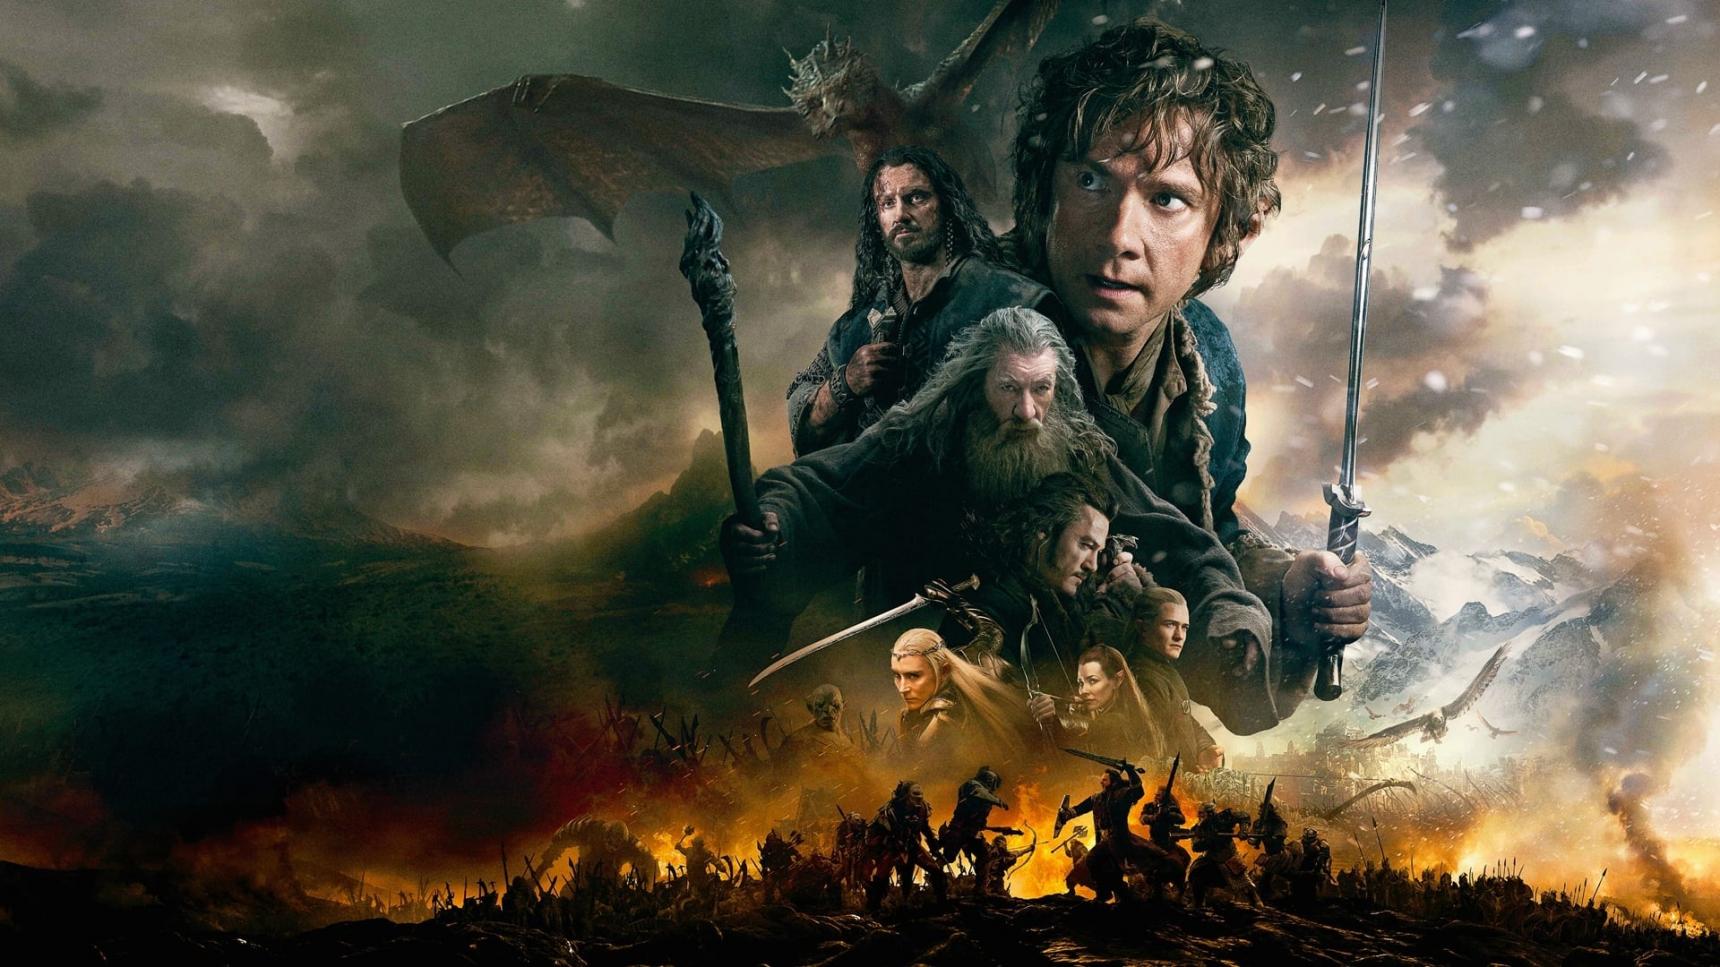 Fondo de pantalla de la película El hobbit: La batalla de los cinco ejércitos en CUEVANA3 gratis